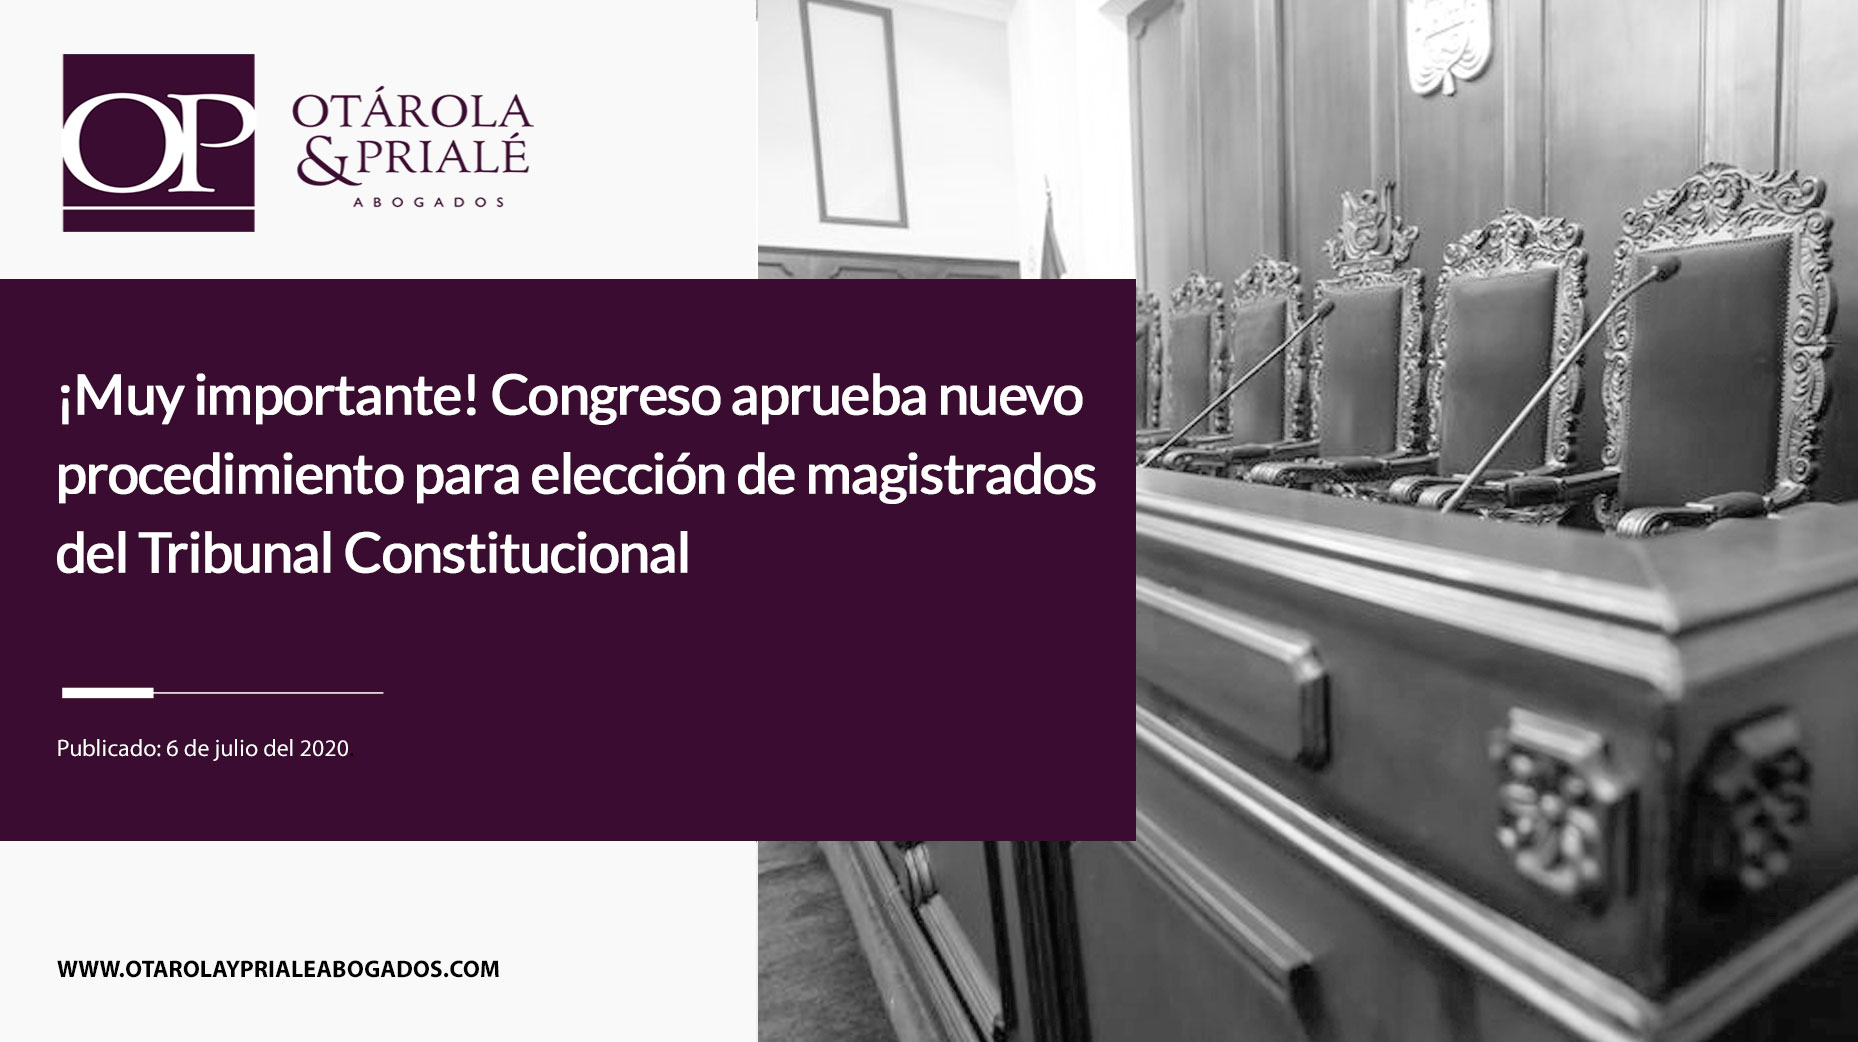 Congreso aprueba nuevo procedimiento para elección de magistrados del Tribunal Constitucional